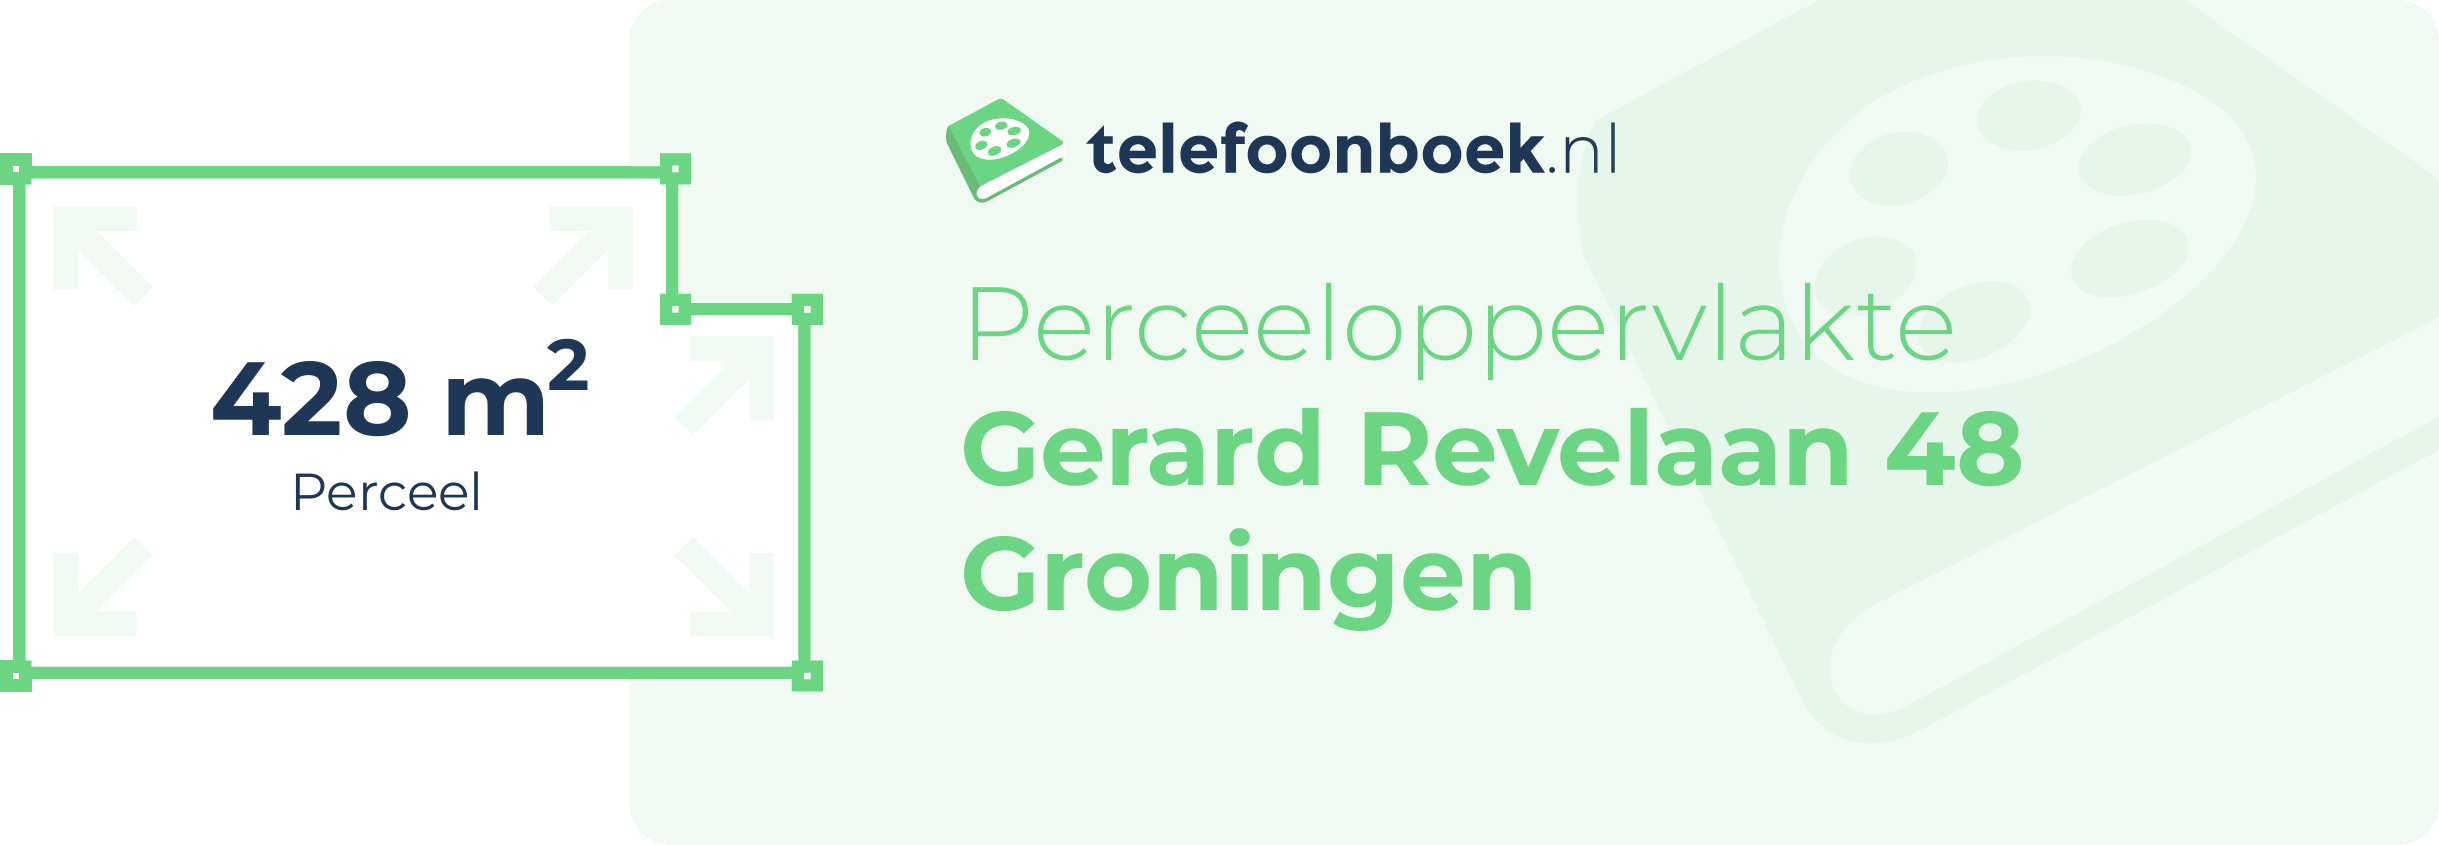 Perceeloppervlakte Gerard Revelaan 48 Groningen